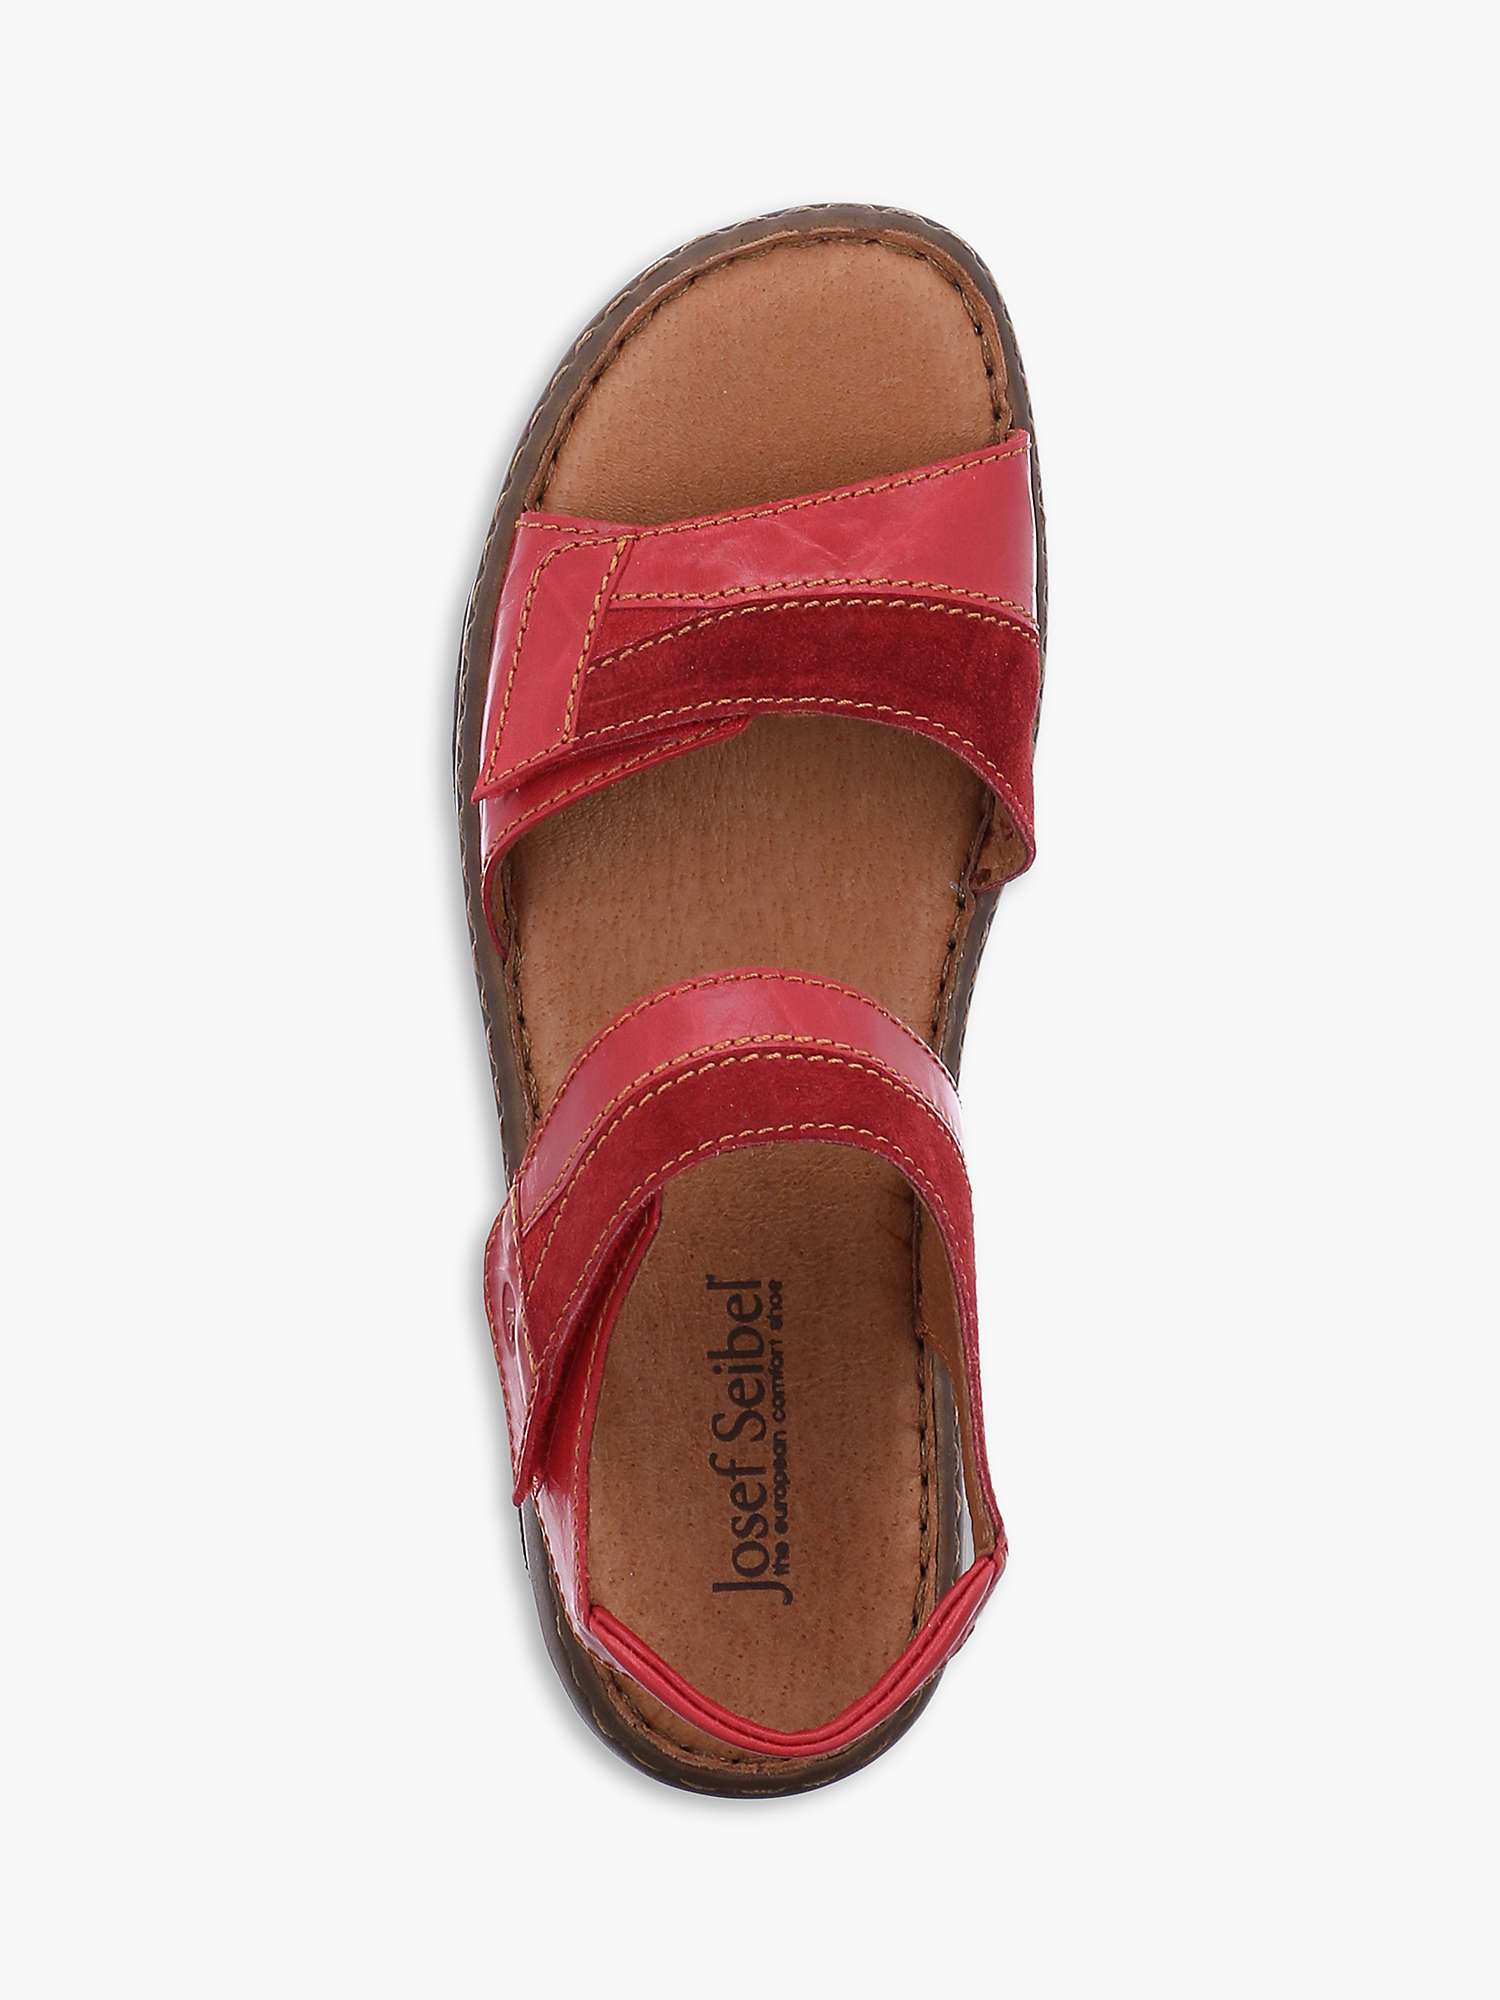 Buy Josef Seibel Debra 19 Leather Flatform Sandals Online at johnlewis.com